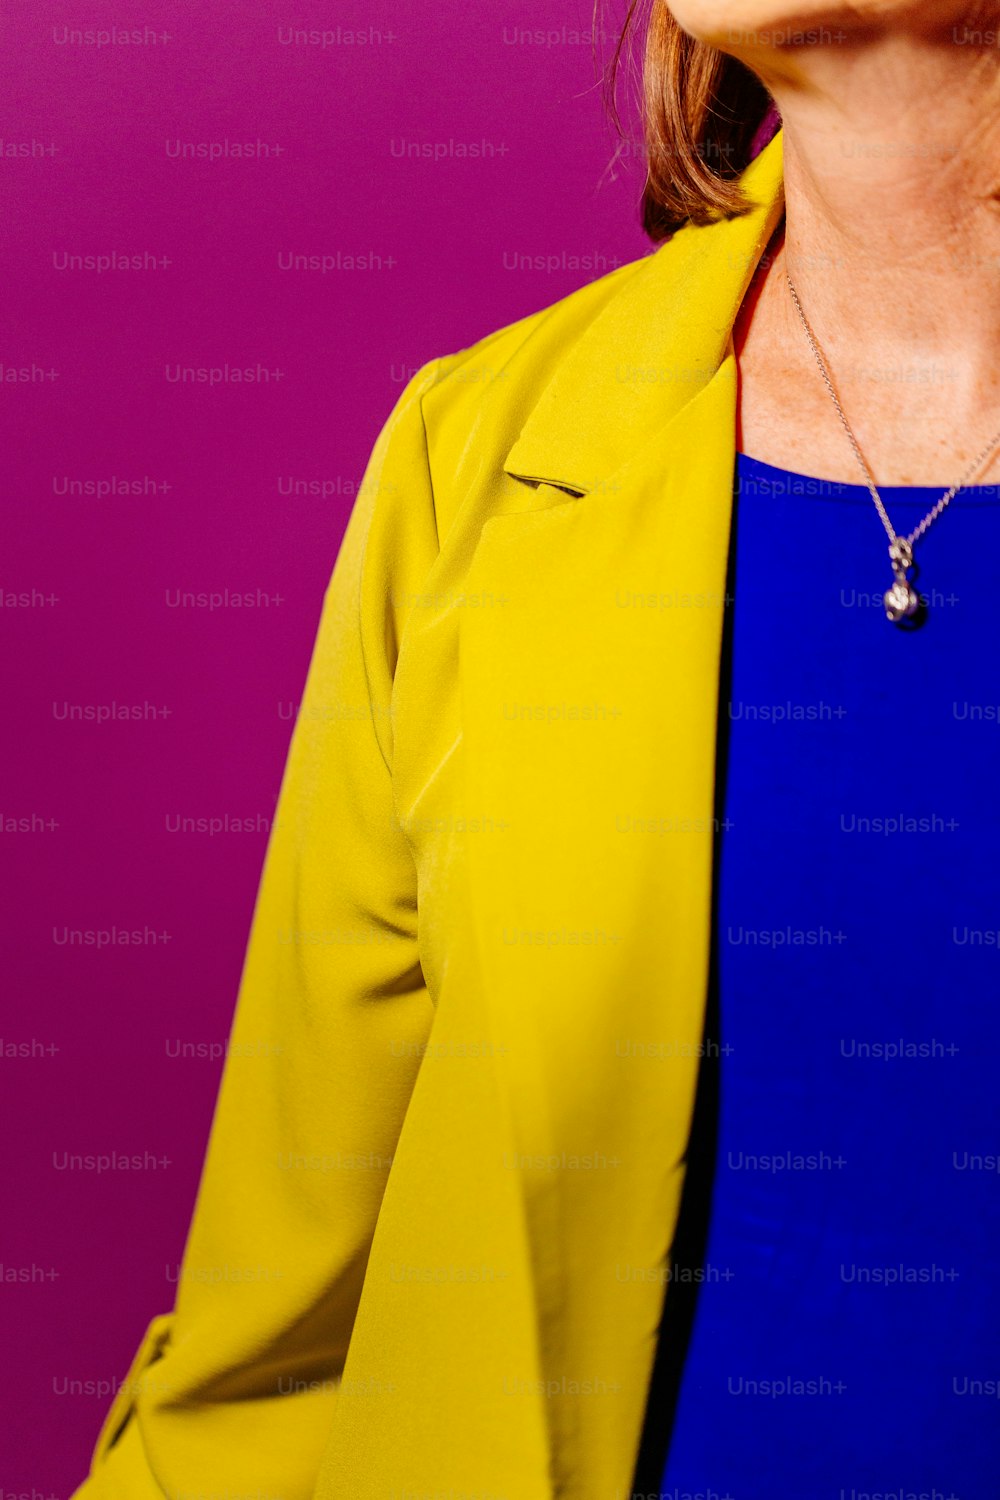 Una mujer con un top azul y chaqueta amarilla